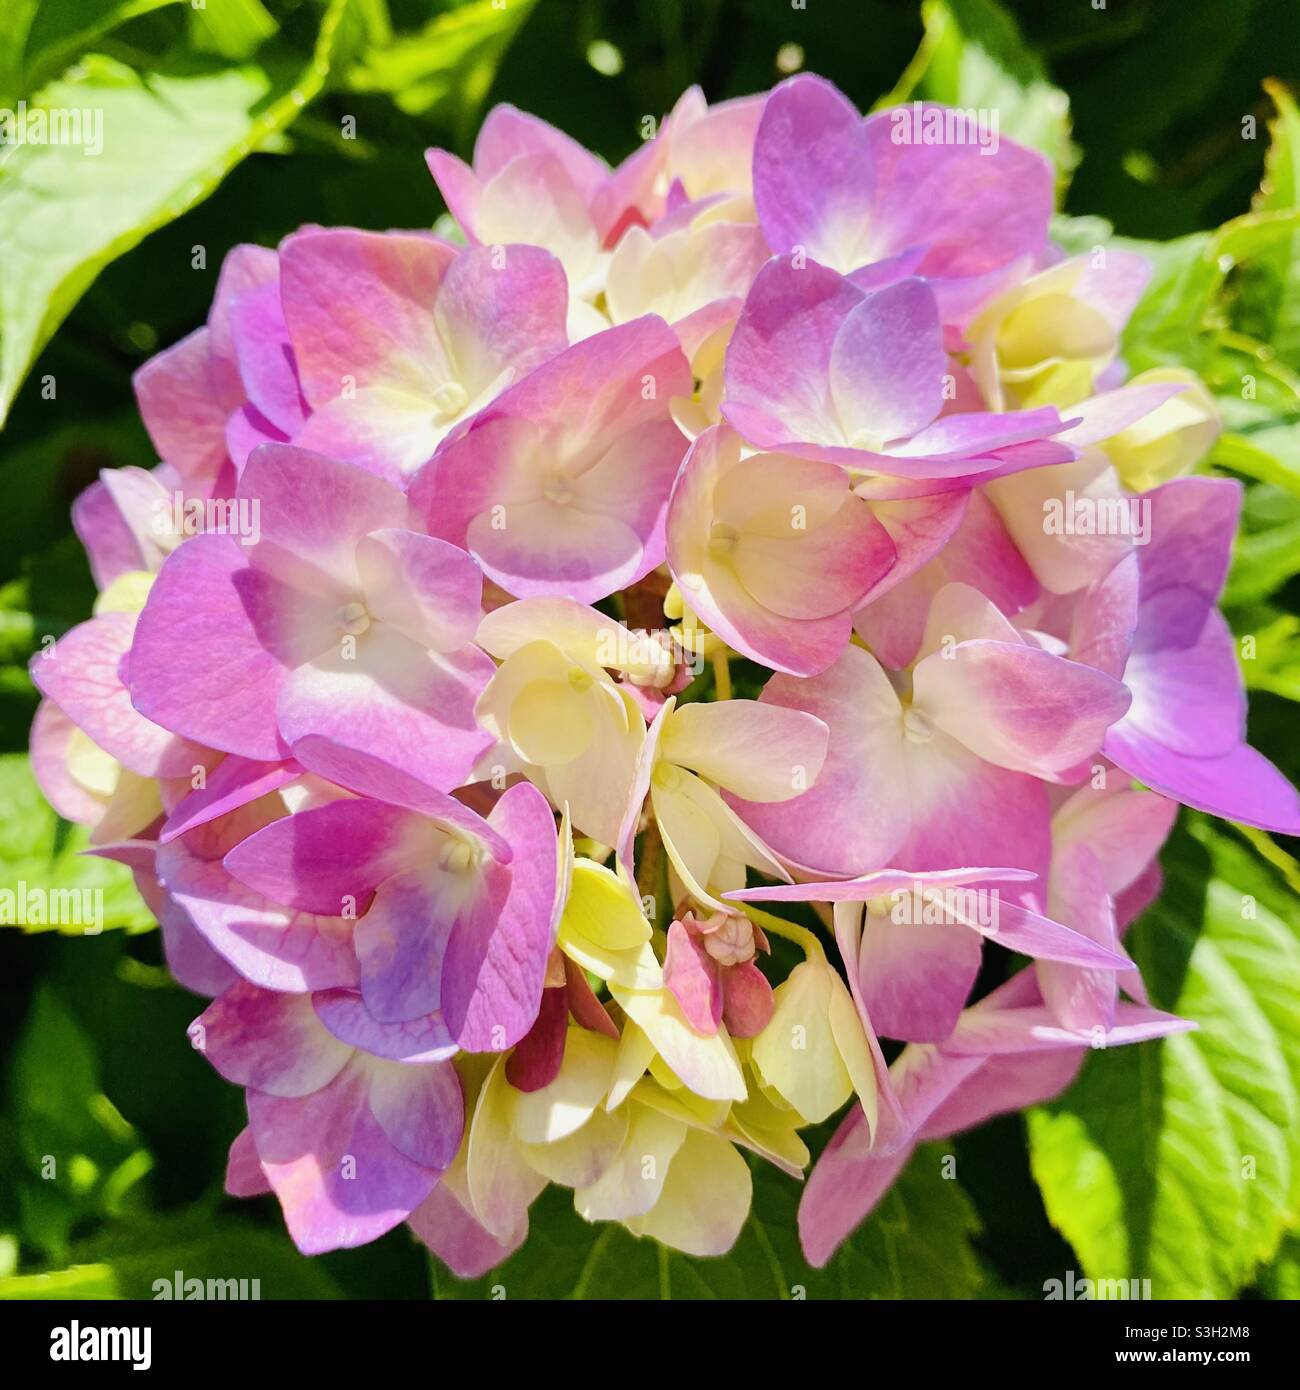 Purple flowers in sunlight Stock Photo